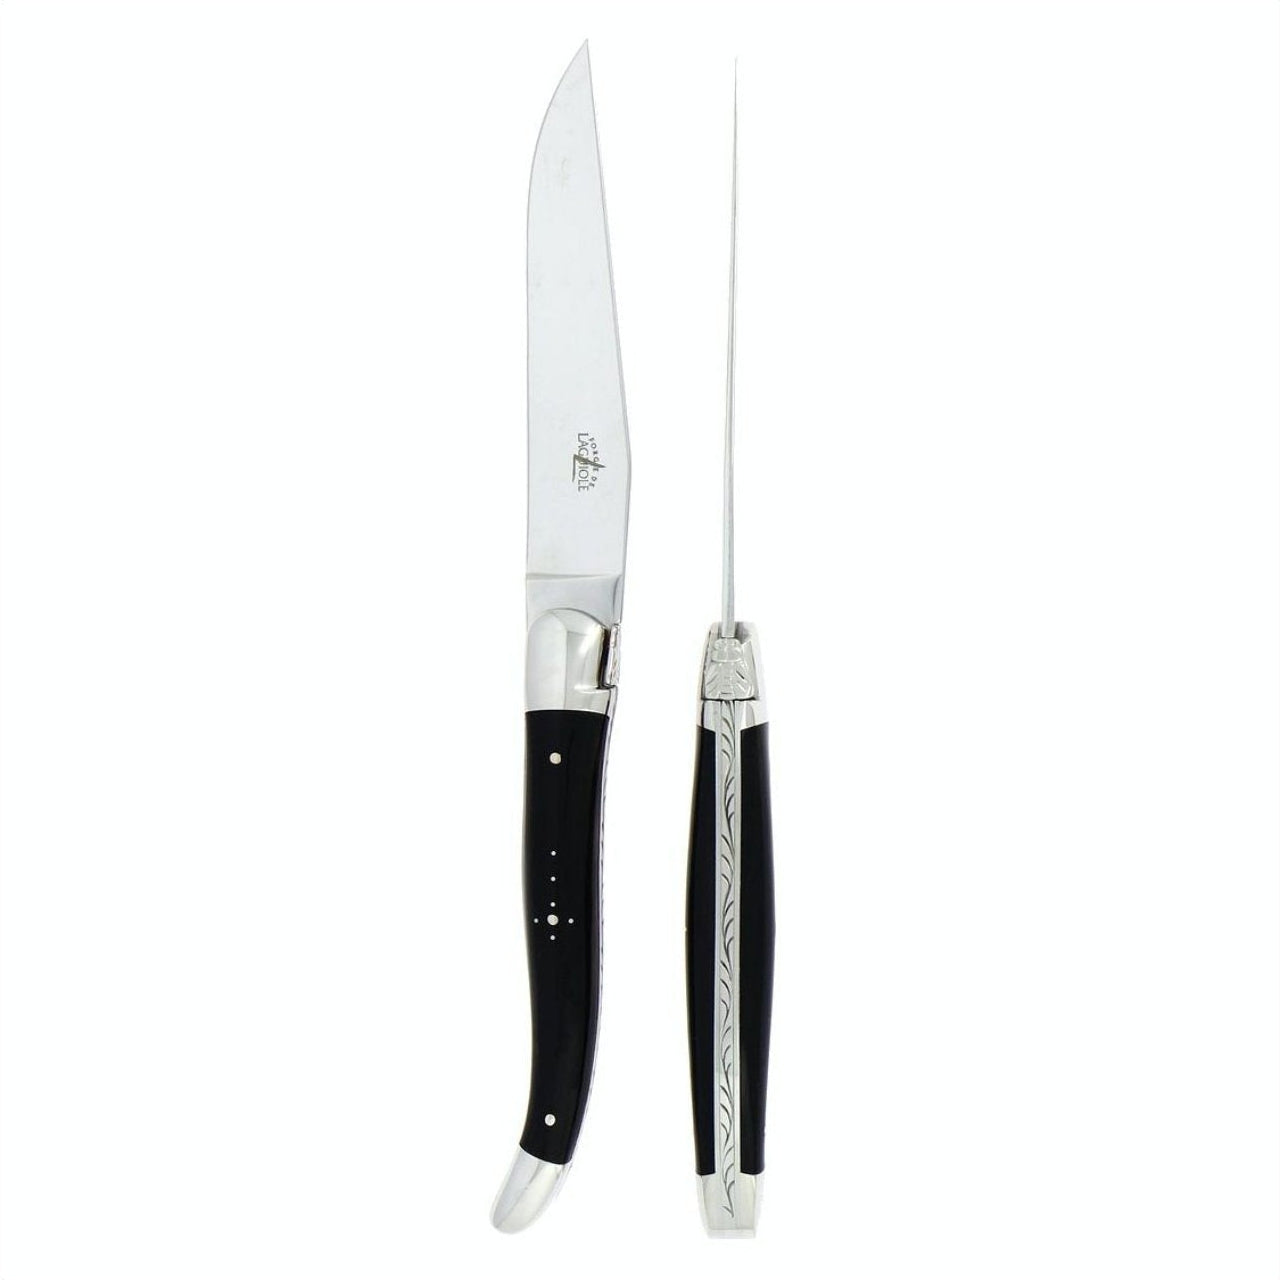 https://www.forge-de-laguiole-usa.com/cdn/shop/files/Forge-de-Laguiole-2-Piece-Steak-Knife-Set-Dark-Horn-Tip_1600x.jpg?v=1694251095